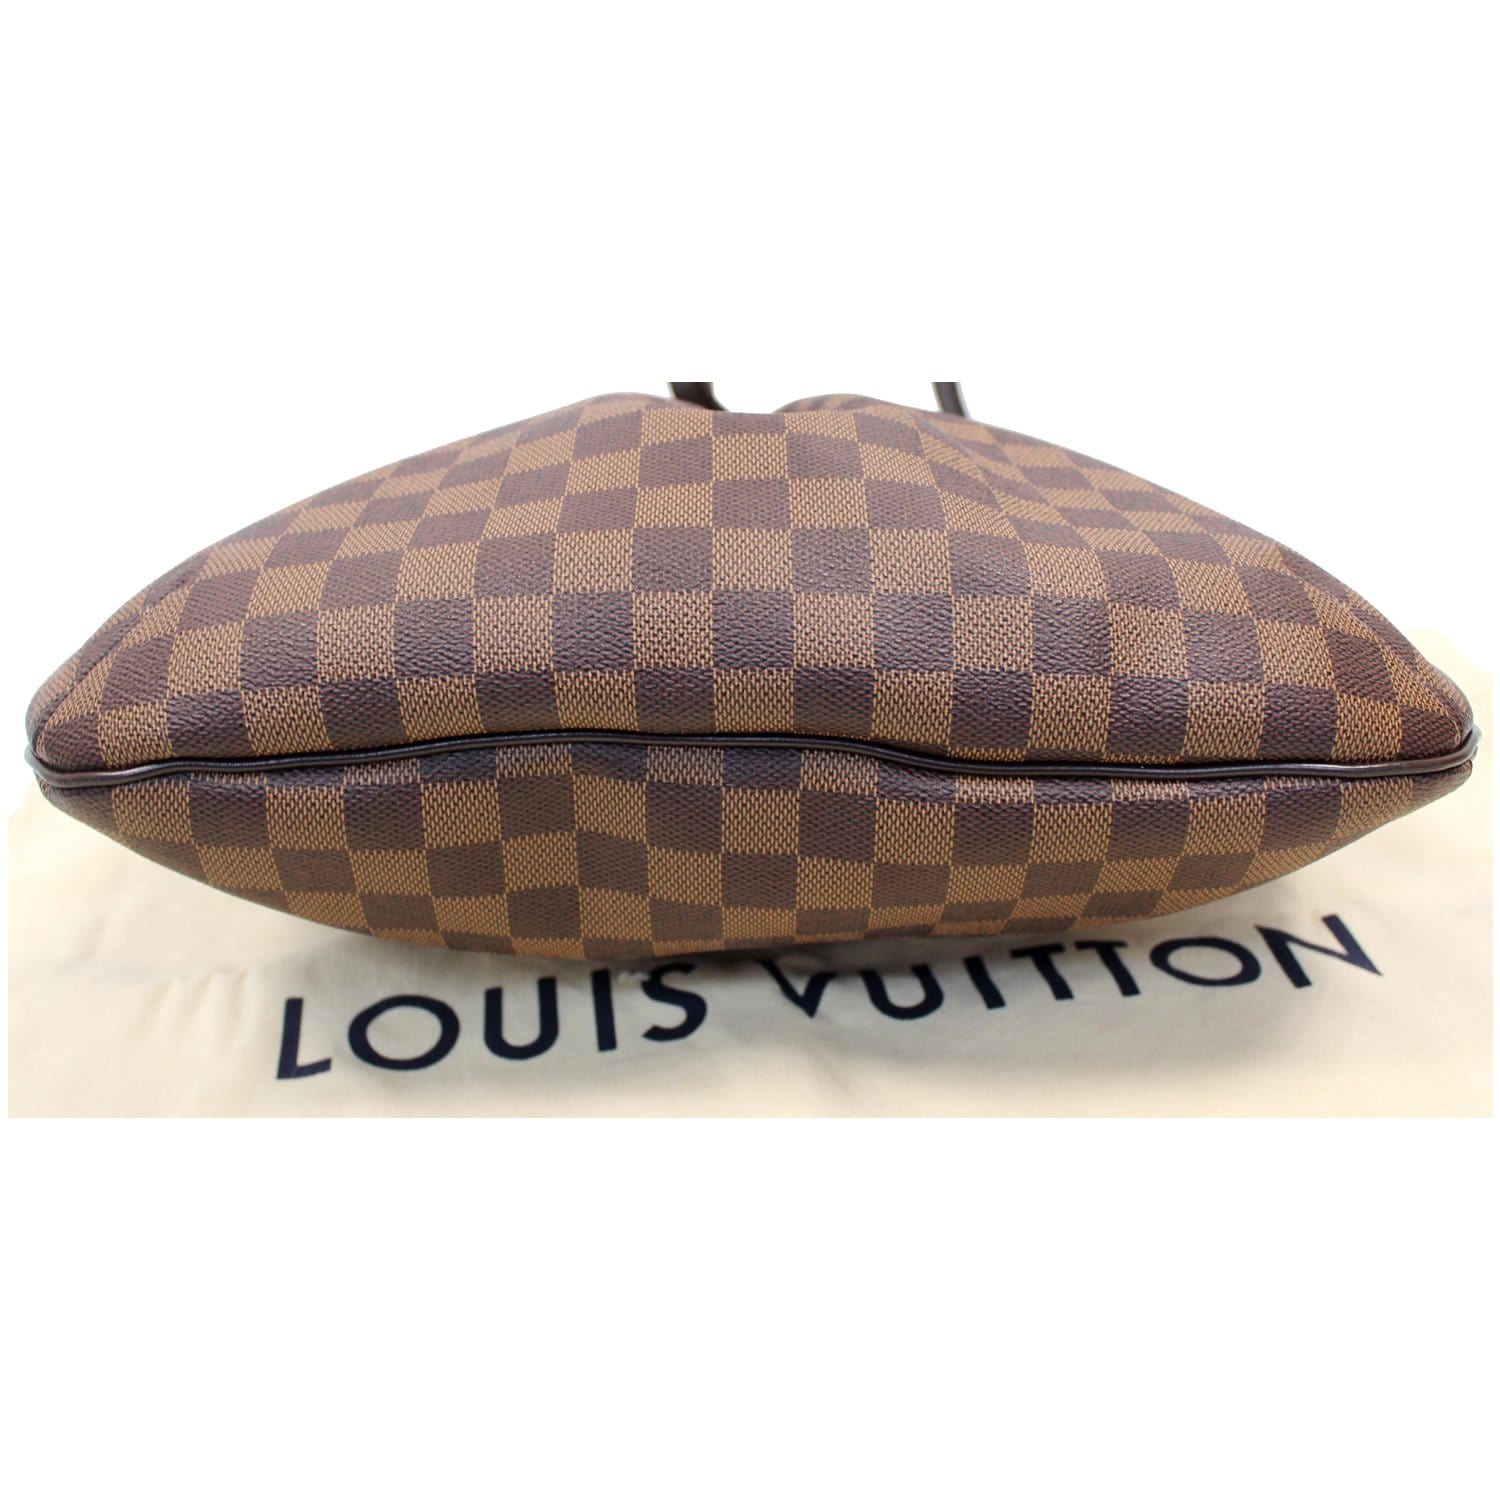 💎SAINT CLOUD GM💎 ✨Auth Louis Vuitton Crossbody!